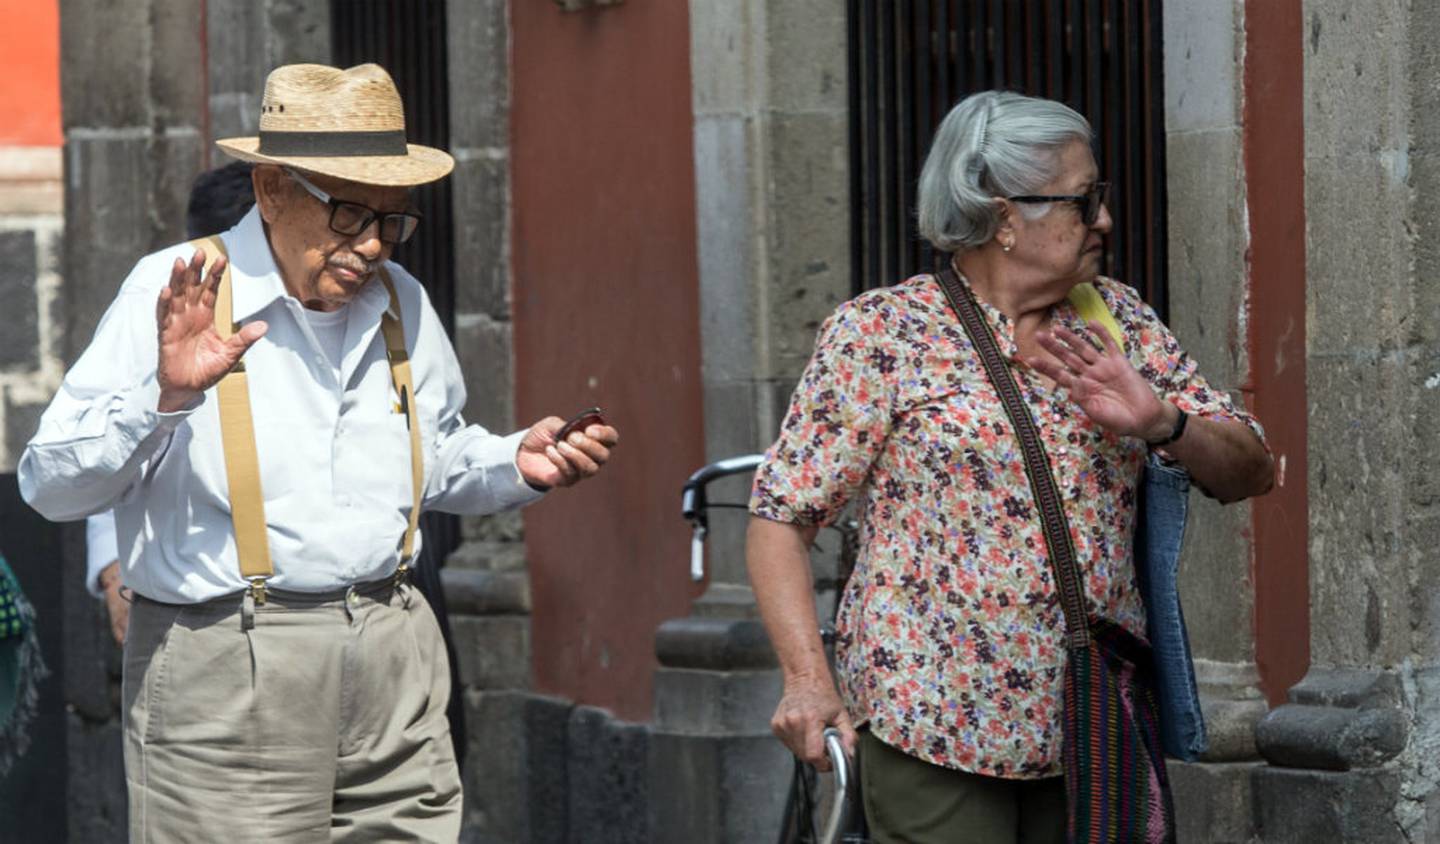 Los adultos y adultos mayores serán grupos con mayor población en México